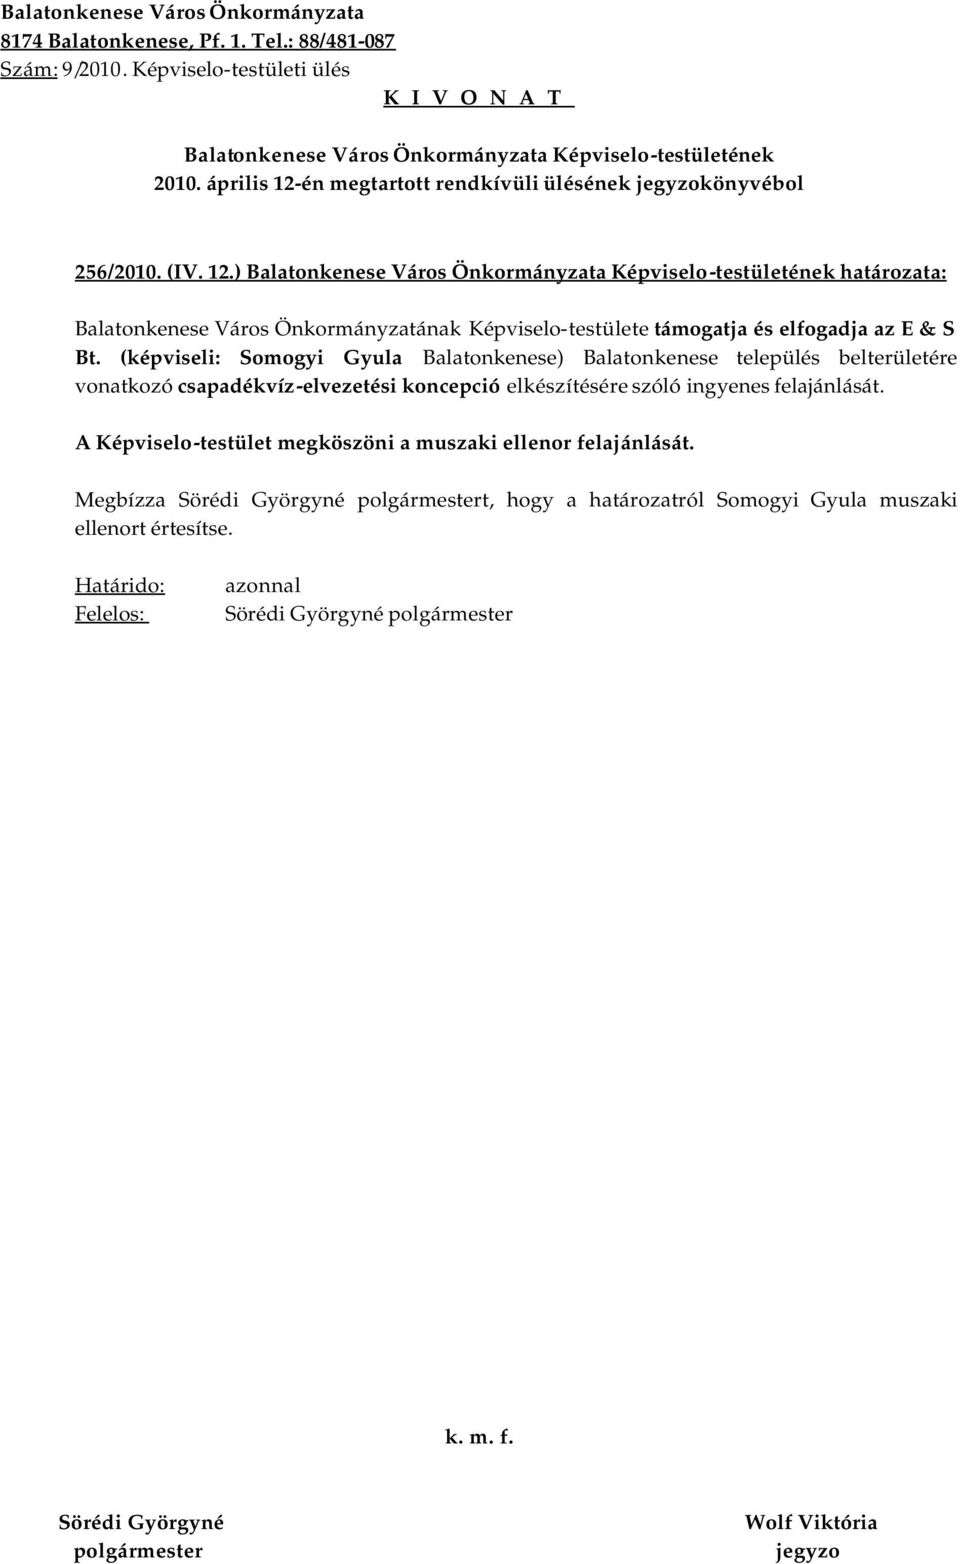 ) határozata: Balatonkenese Város Önkormányzatának Képviselo-testülete támogatja és elfogadja az E & S Bt.